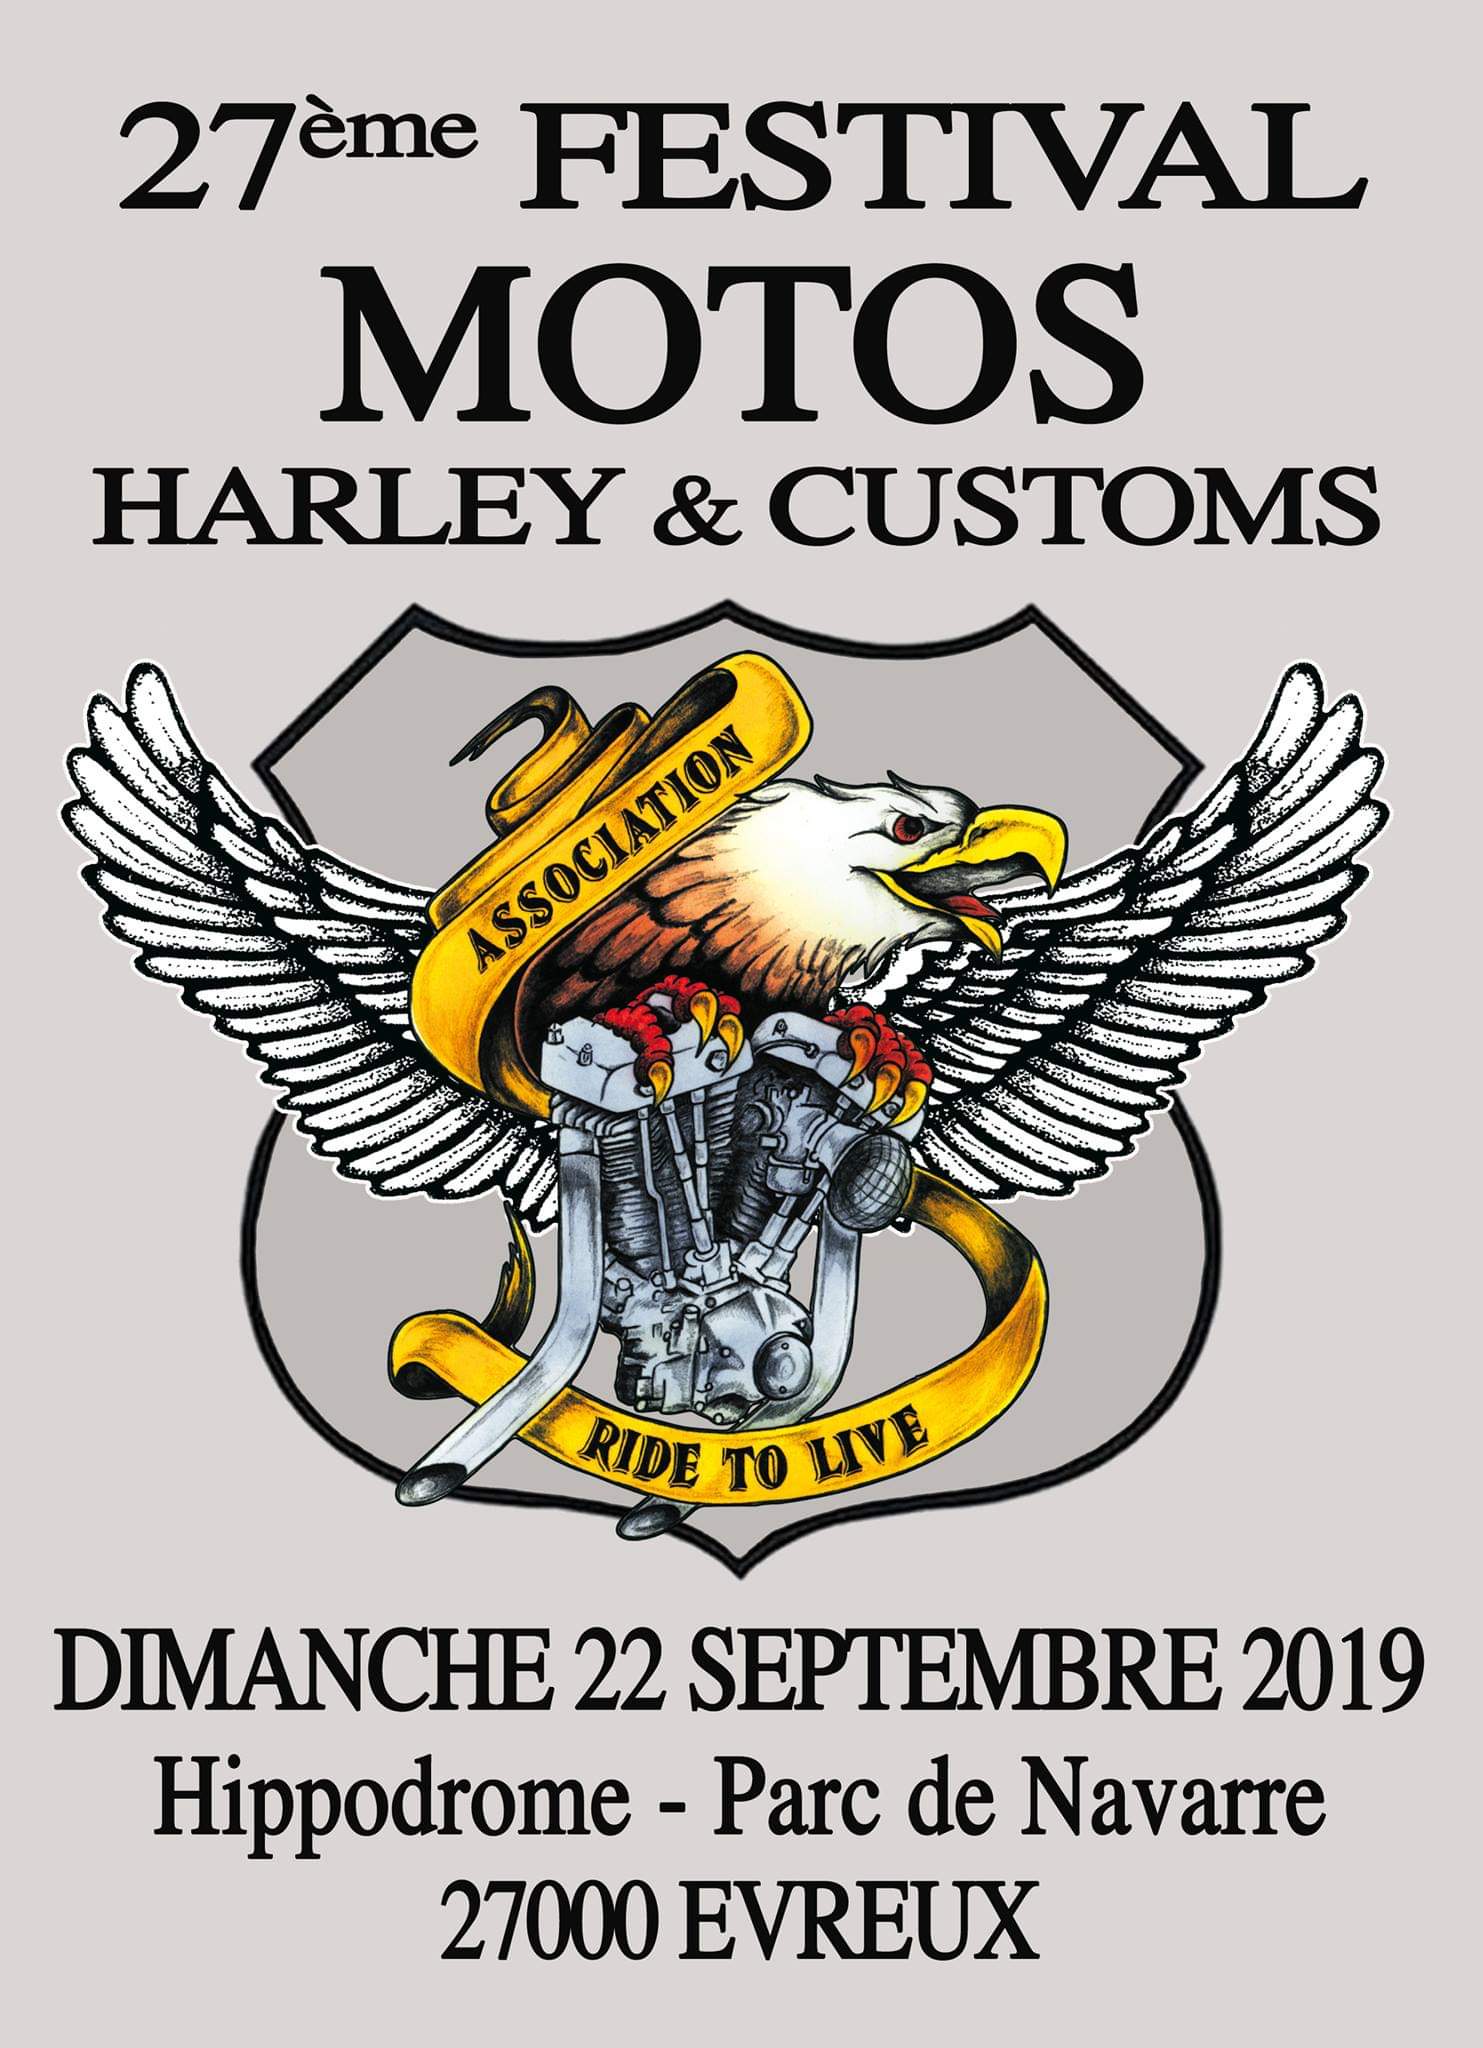 22 septembre 2019 - 27ème festival Moto à Evreux (27) Fb_img25